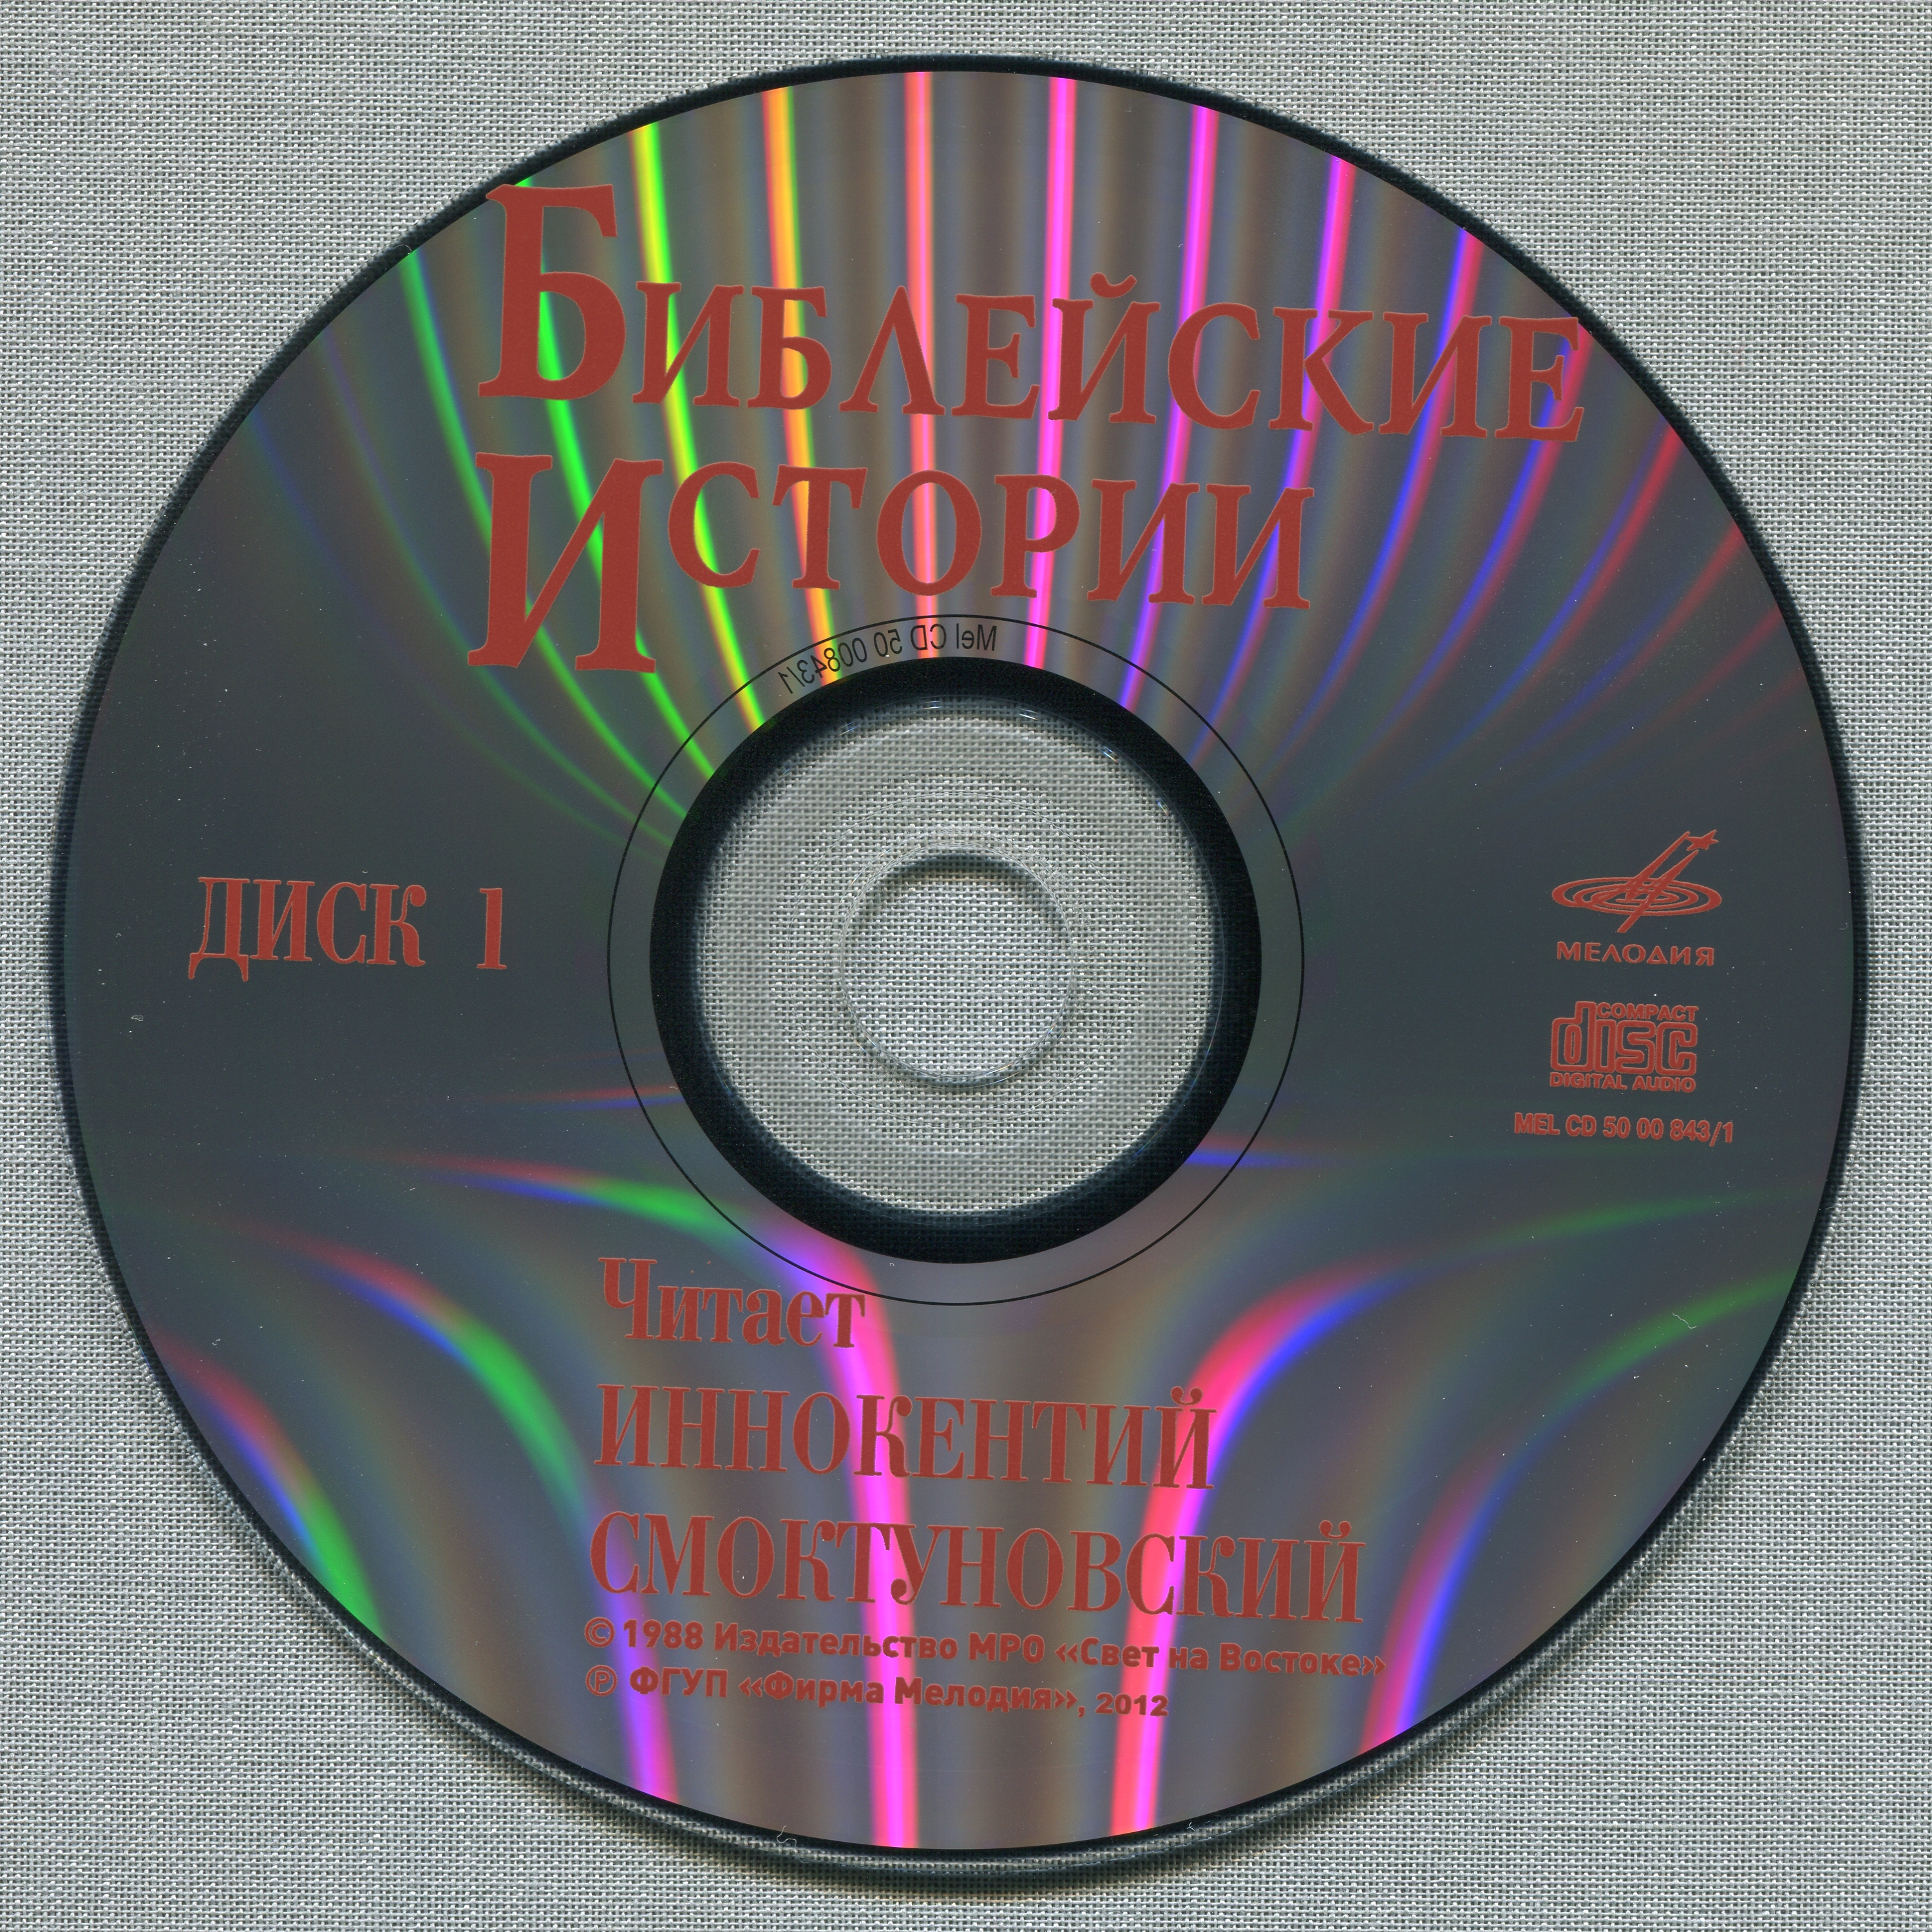 Иннокентий Смоктуновский - Библейские истории (8 CD)